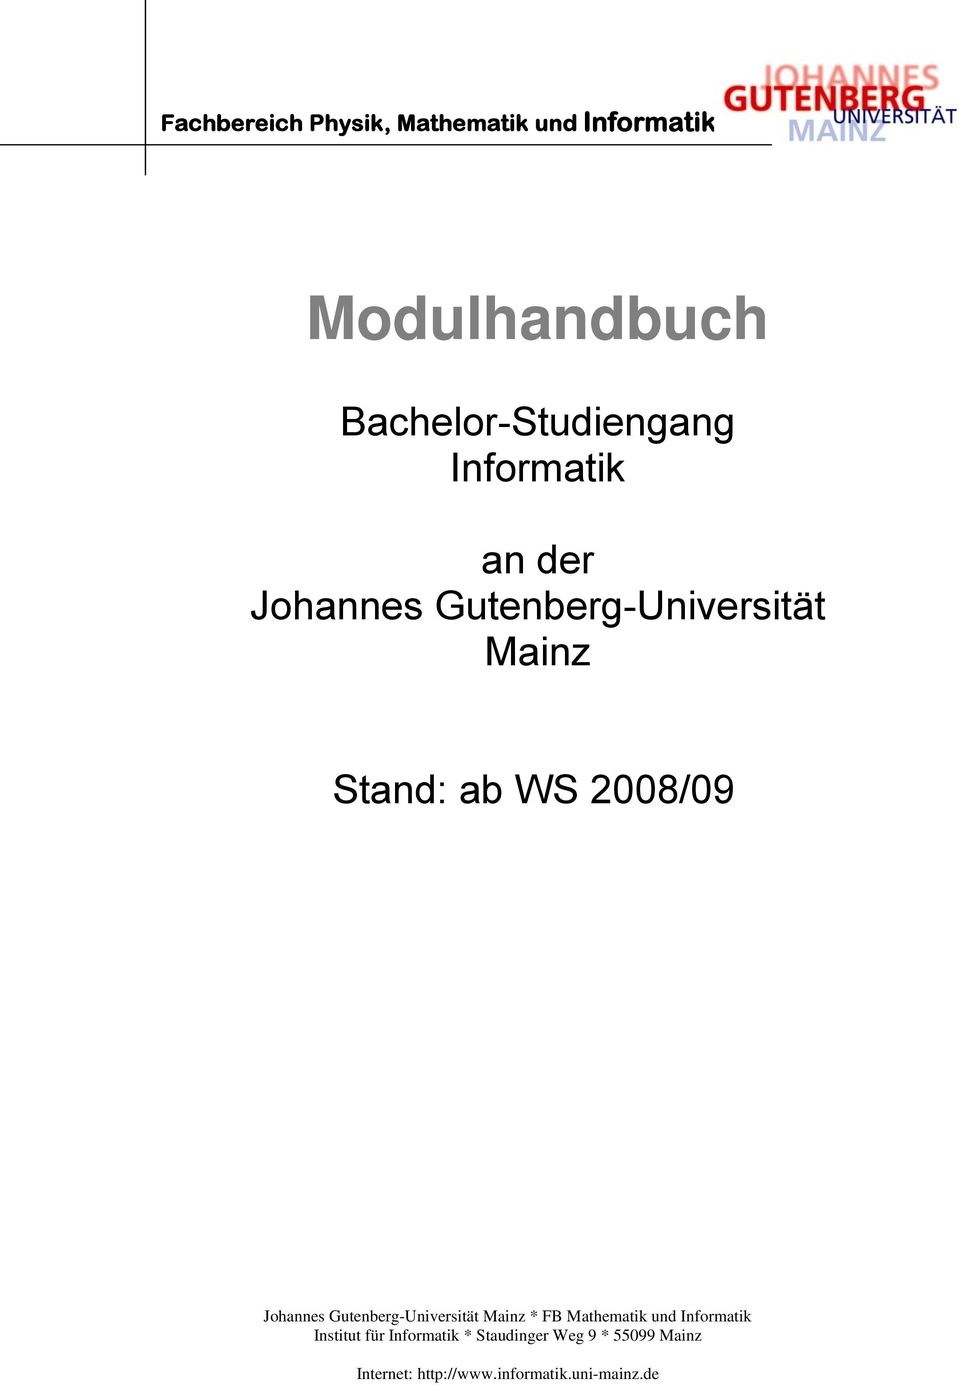 Johannes Gutenberg-Universität Mainz * FB Mathematik und Informatik Institut für